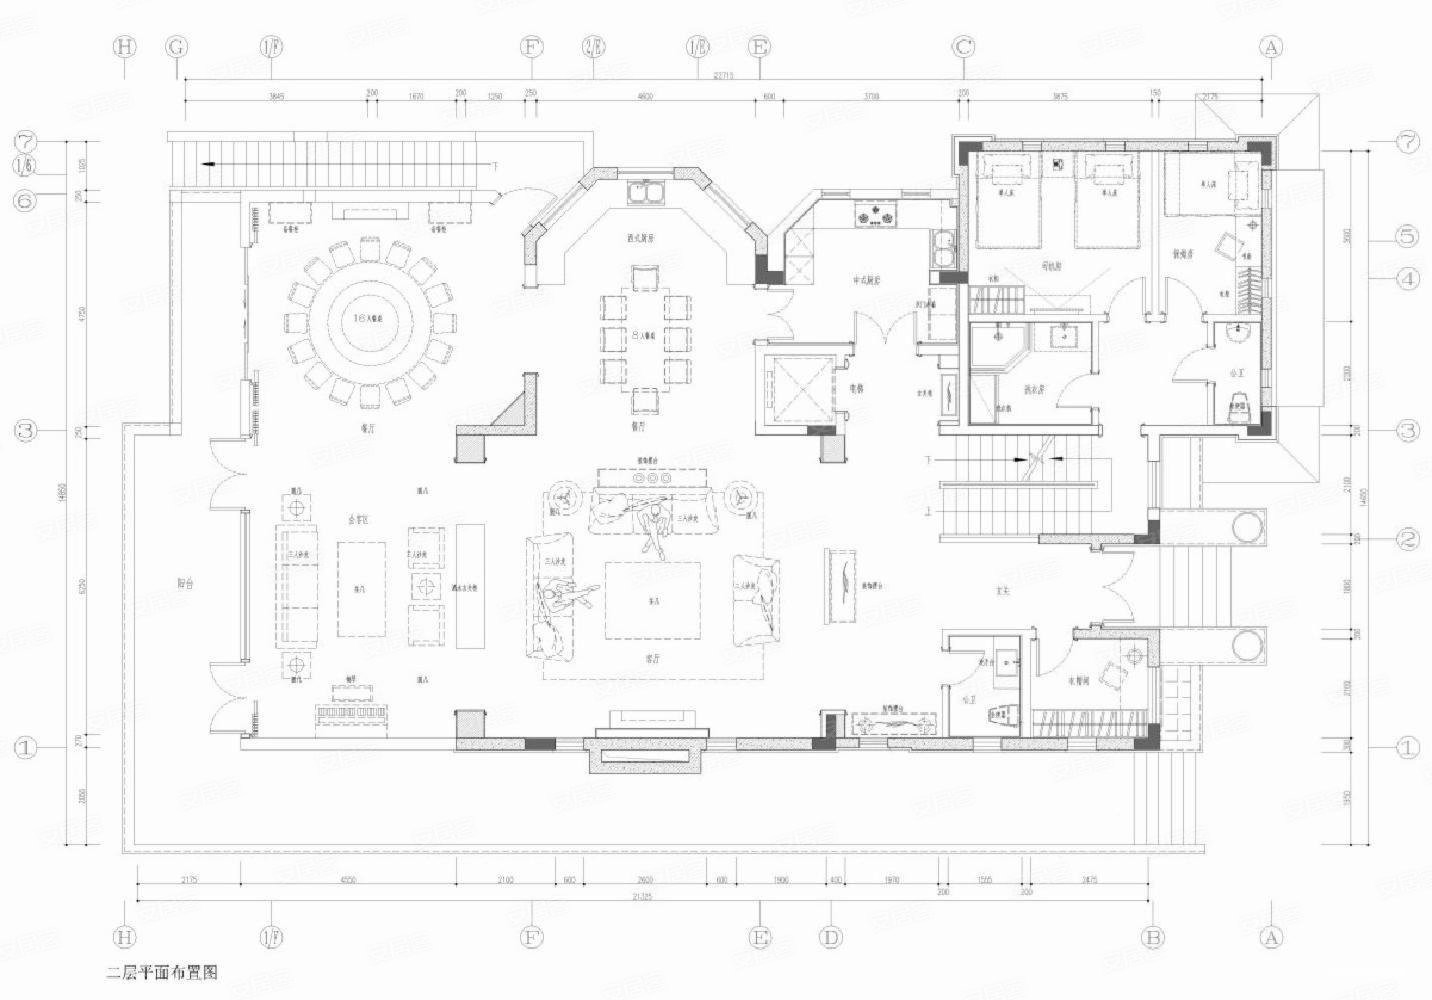 430新古典别墅装修效果图,南湖半山豪庭|恒久之美装修案例效果图-美广网